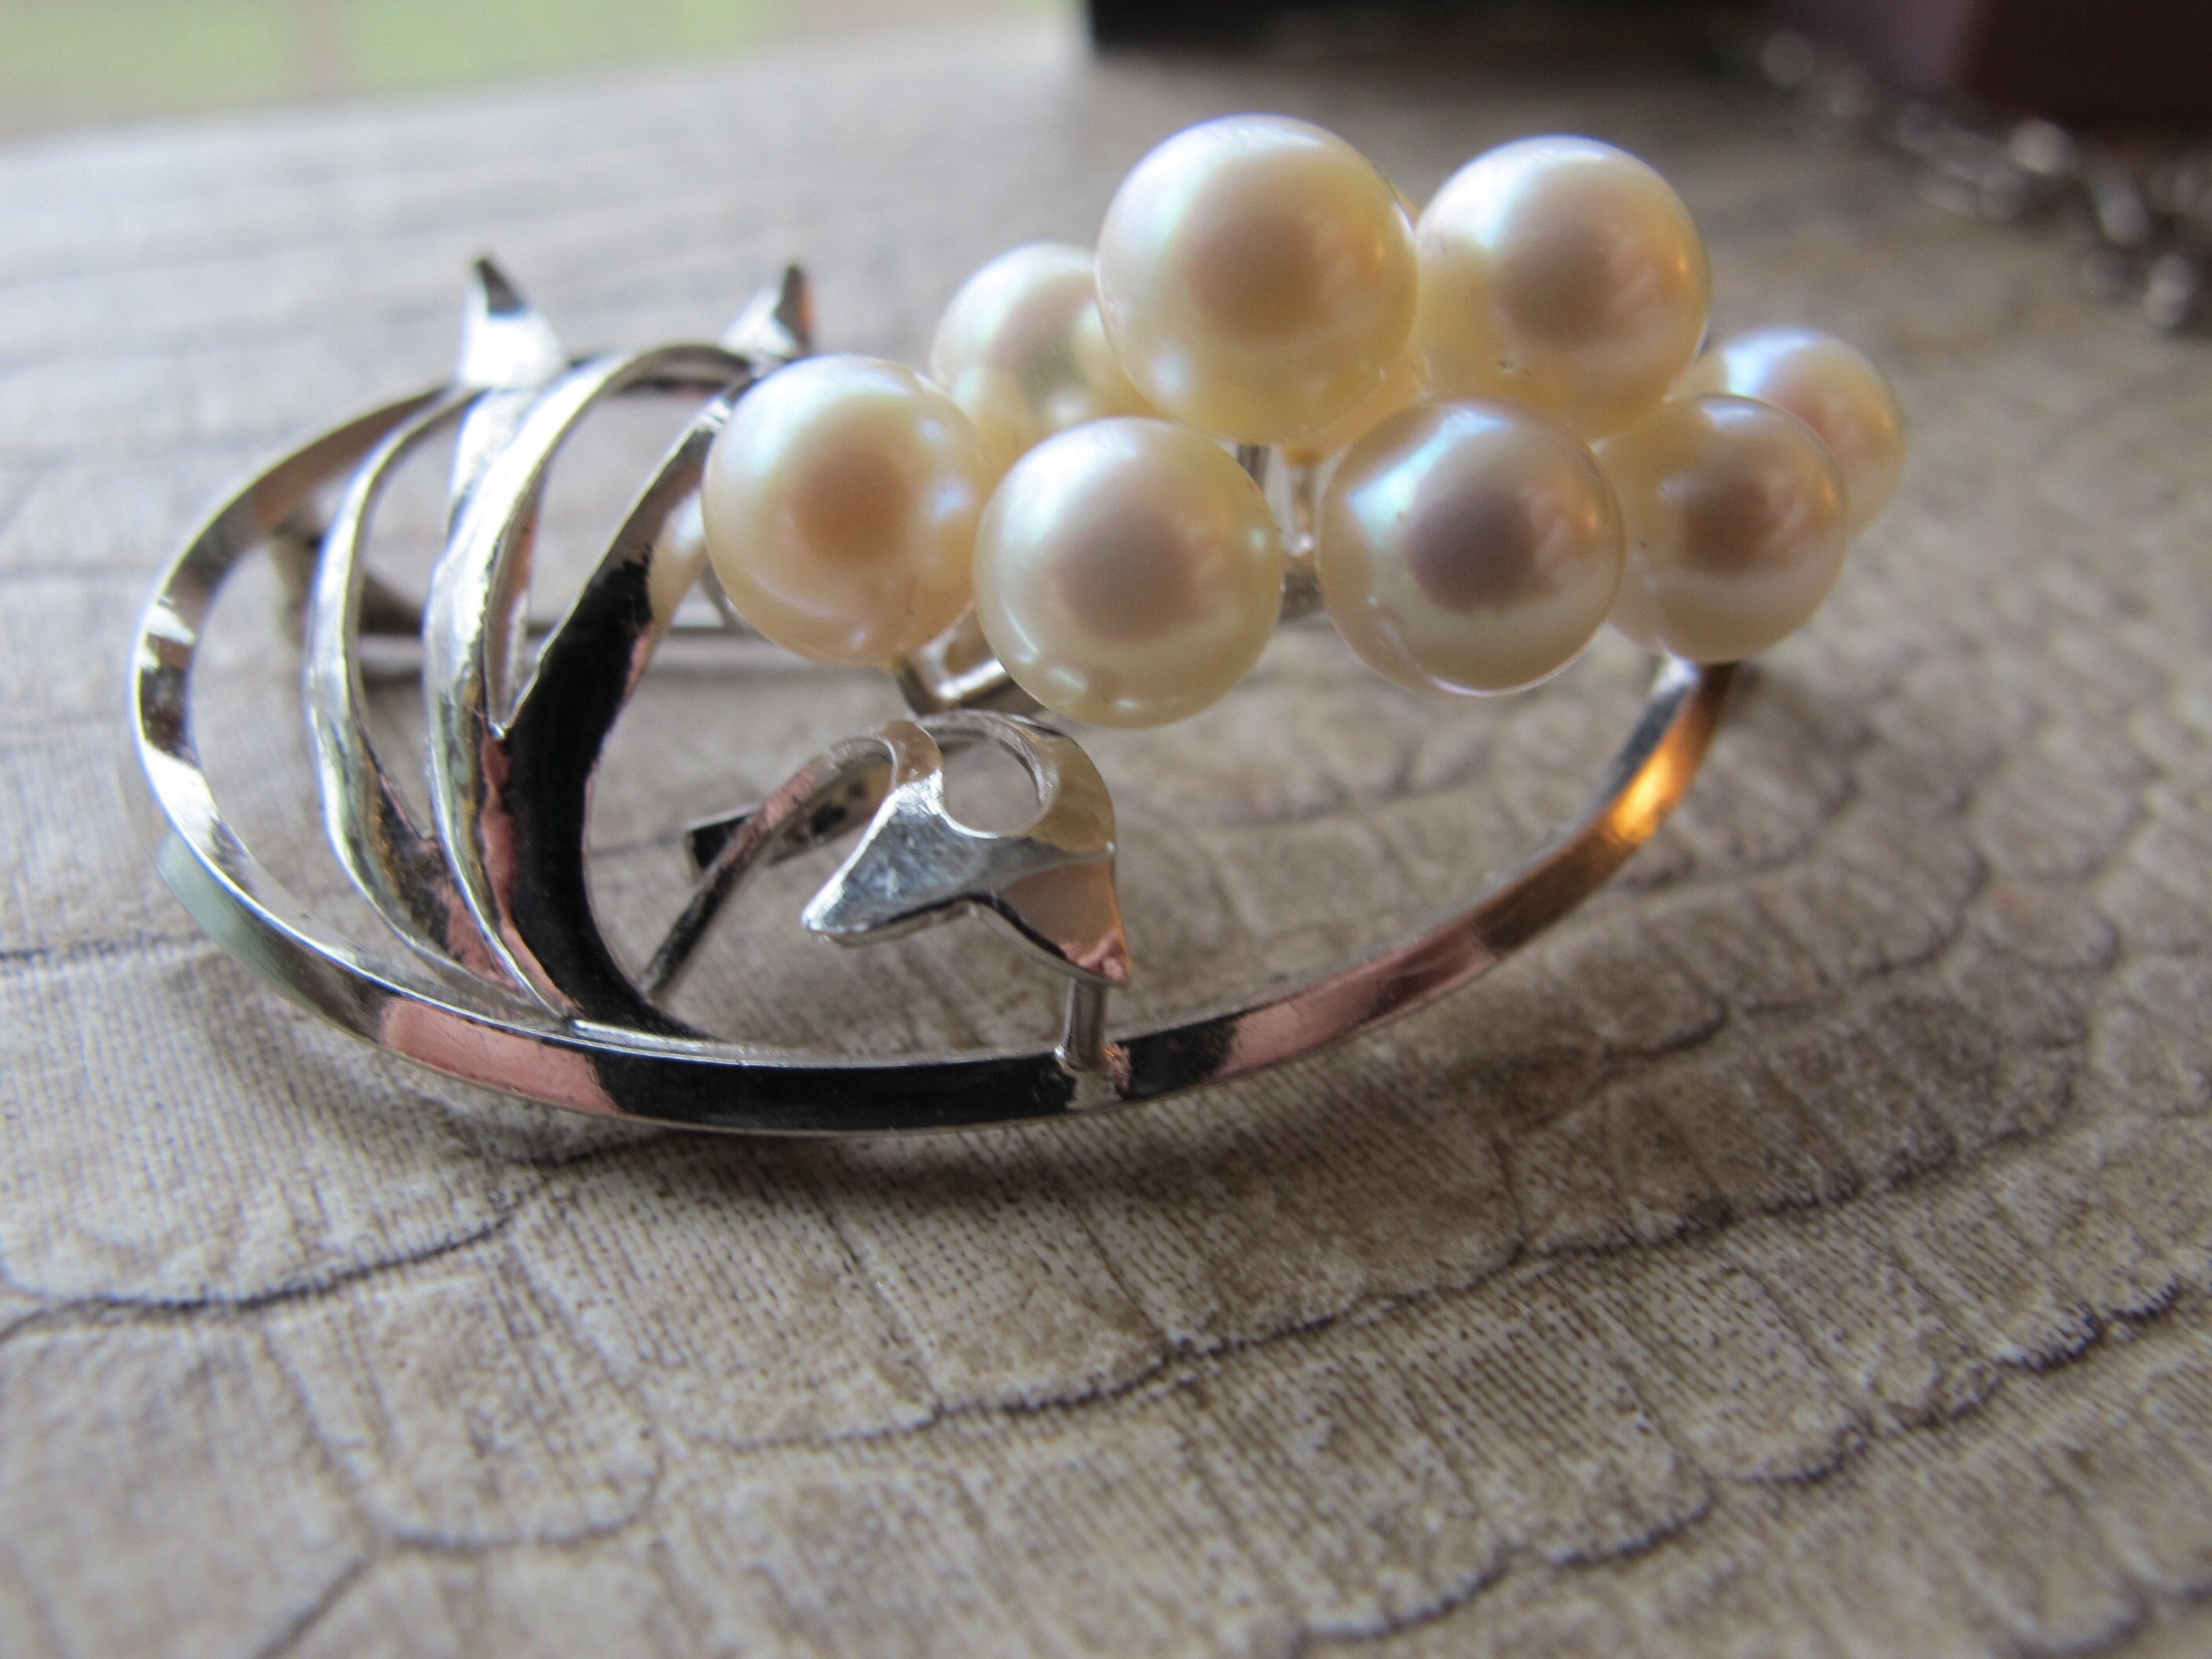 Perle du Japon - Perles Akoya - Perle Fine Japonaise